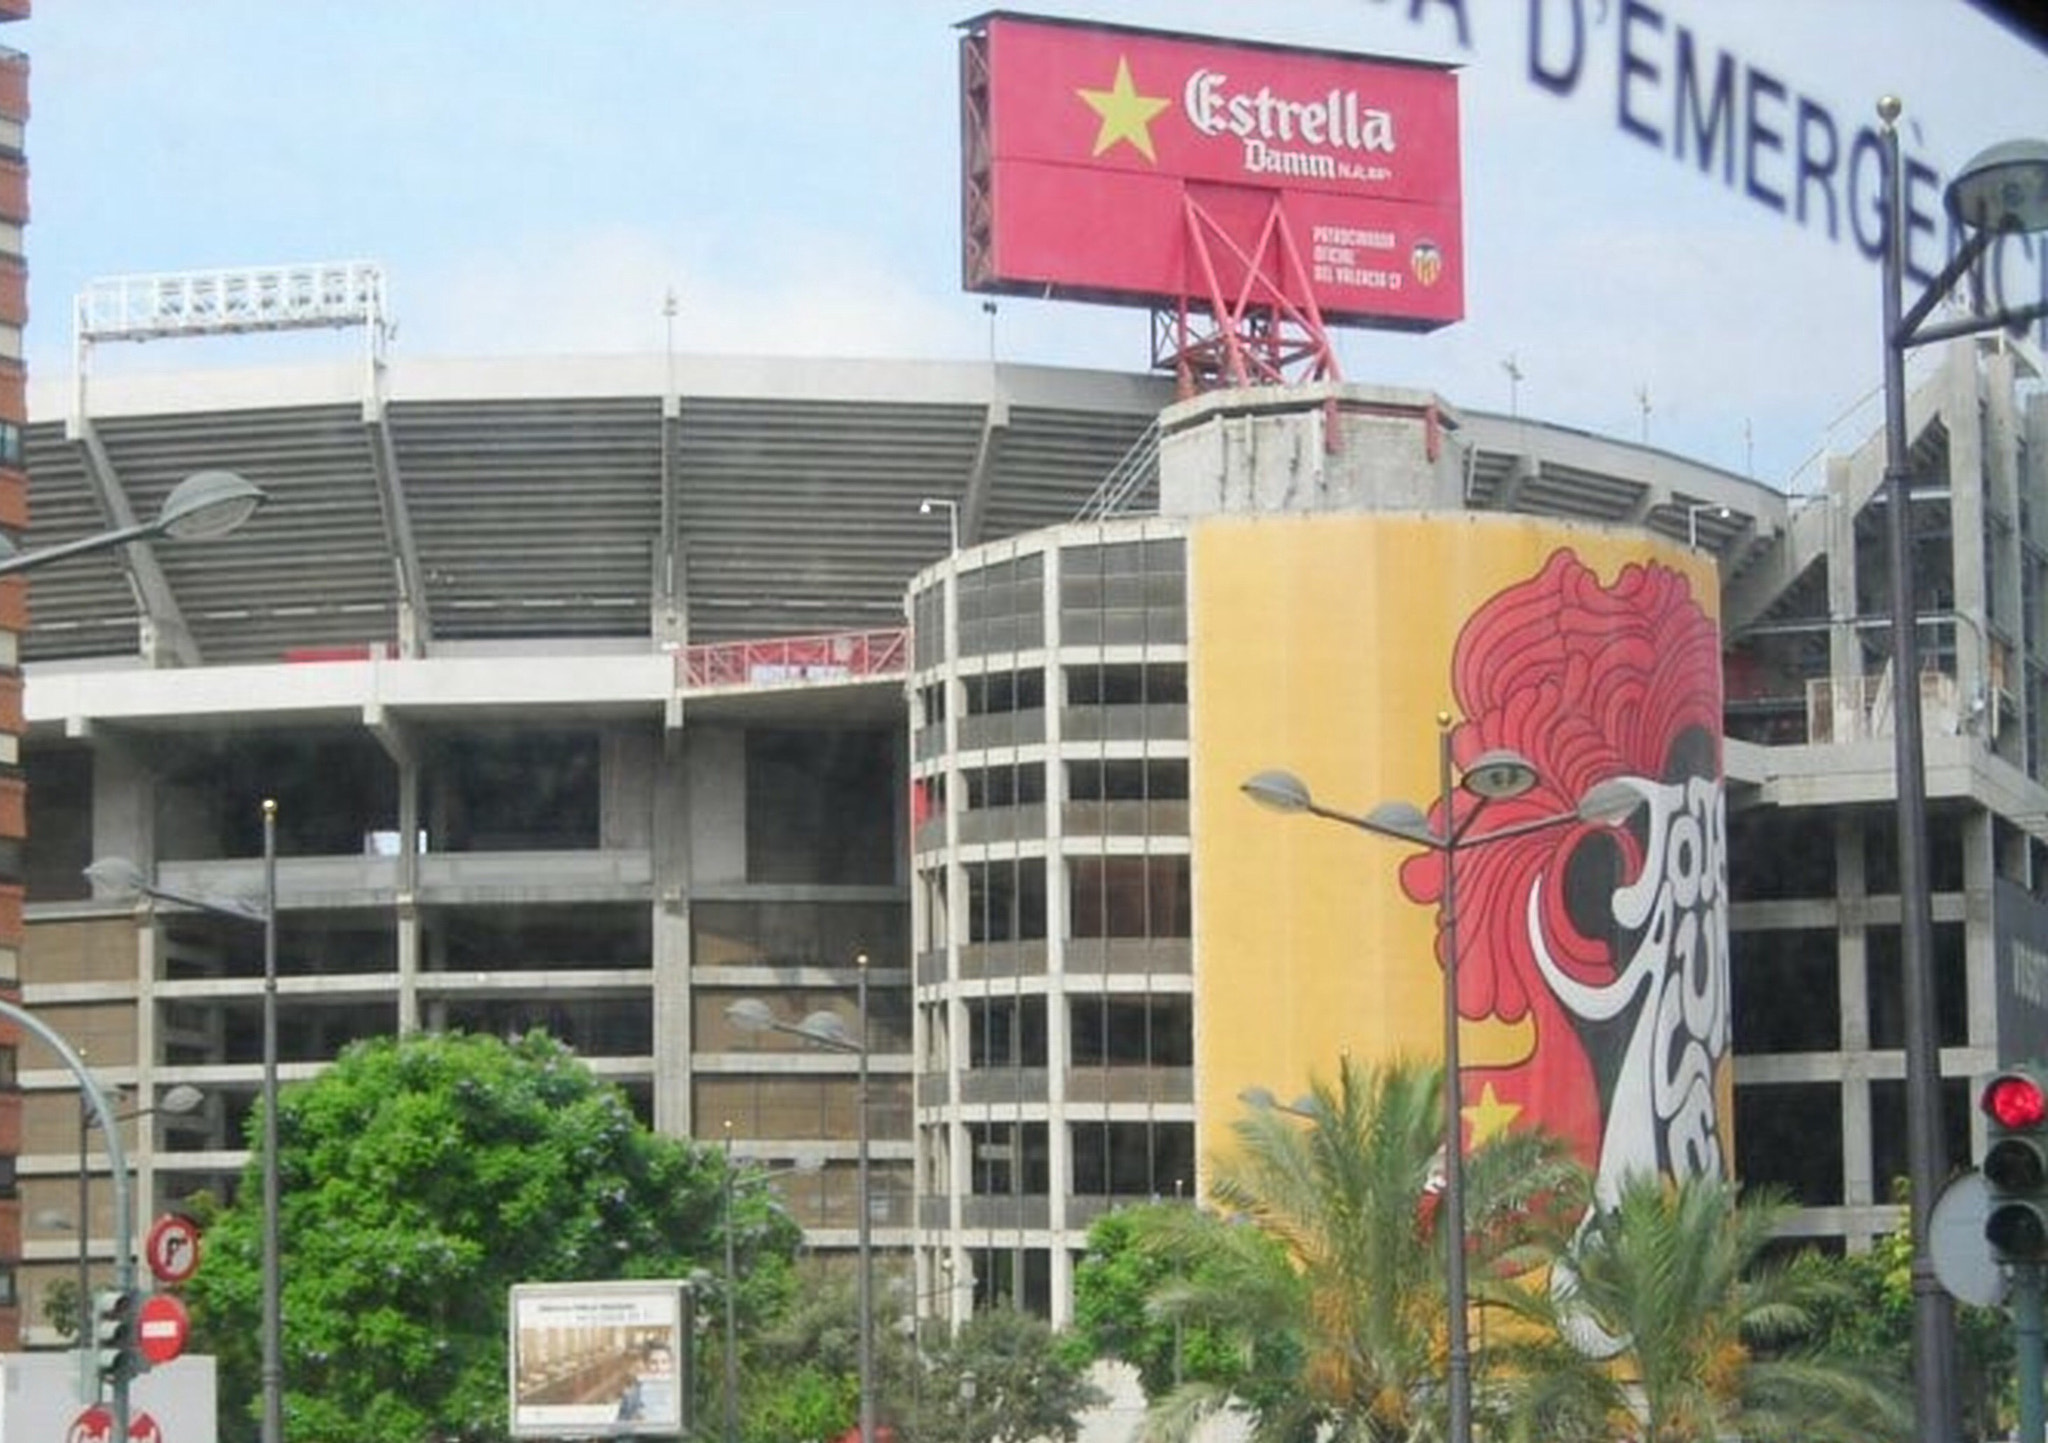 The Mestalla, Valencia FC